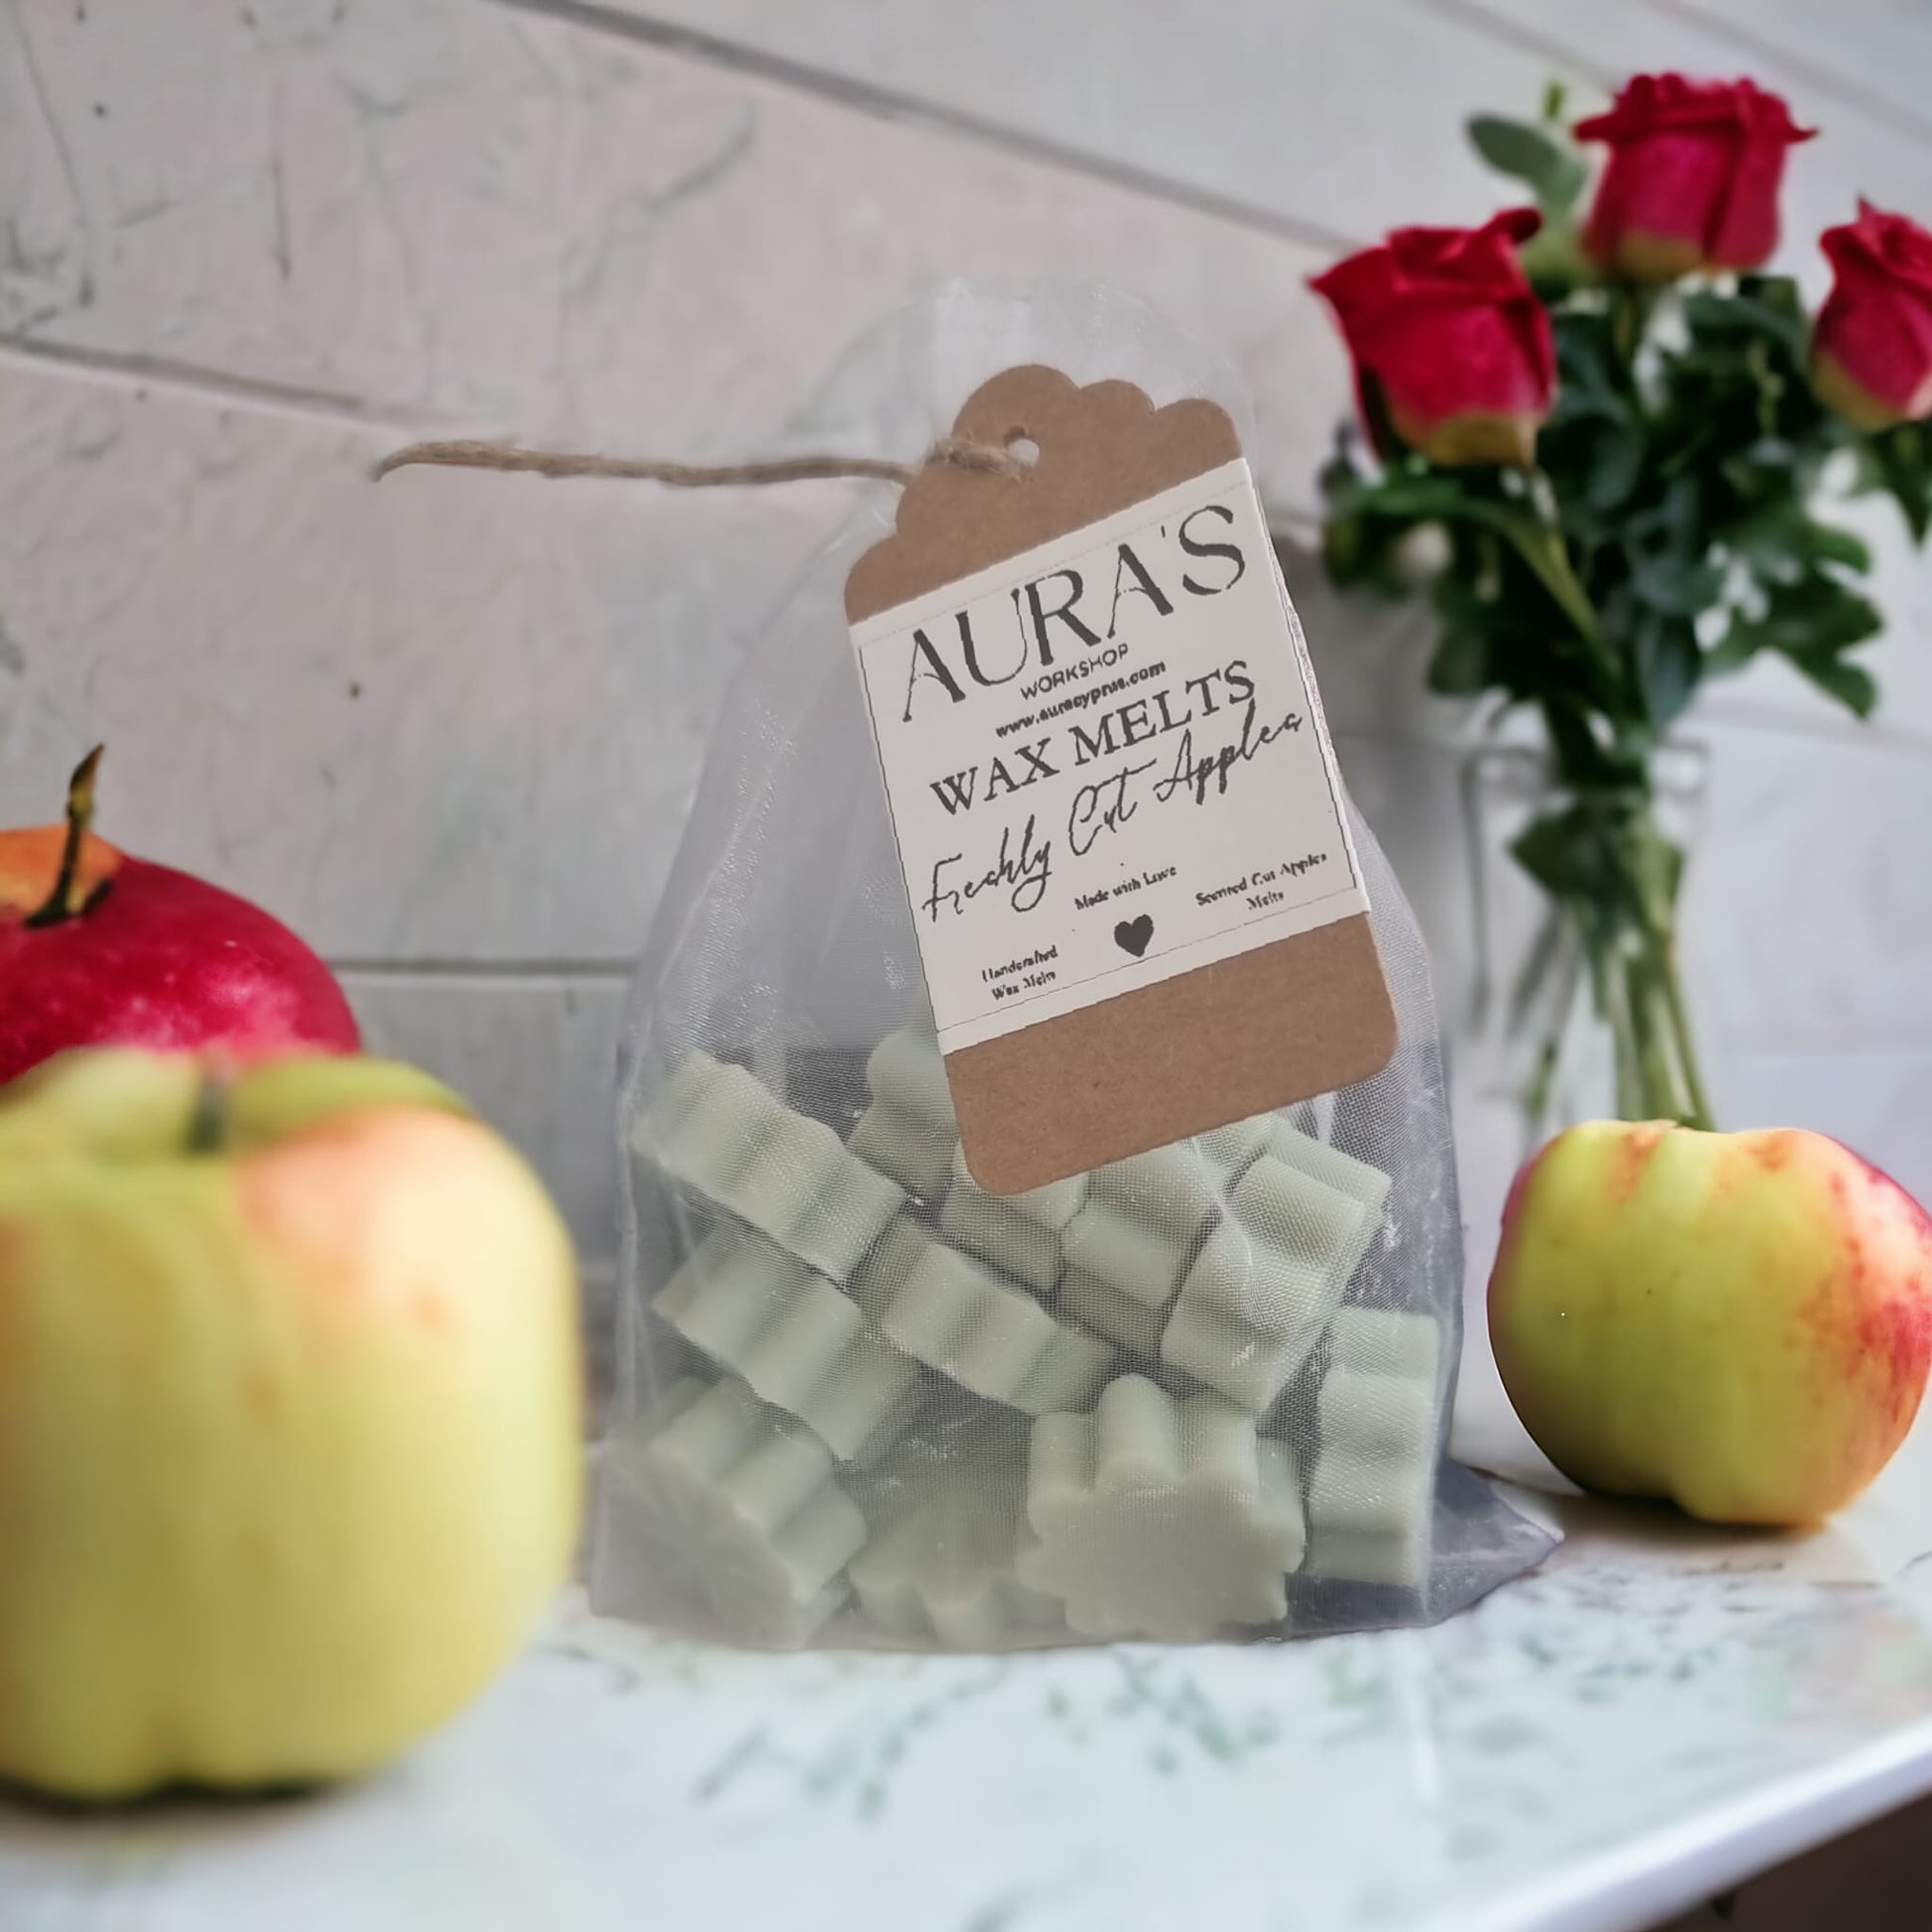 Freshly Cut Apple Flower Shaped x12 Wax Melt Bar in Organza Bag - Auras Workshop  -   -   - Cyprus & Greece